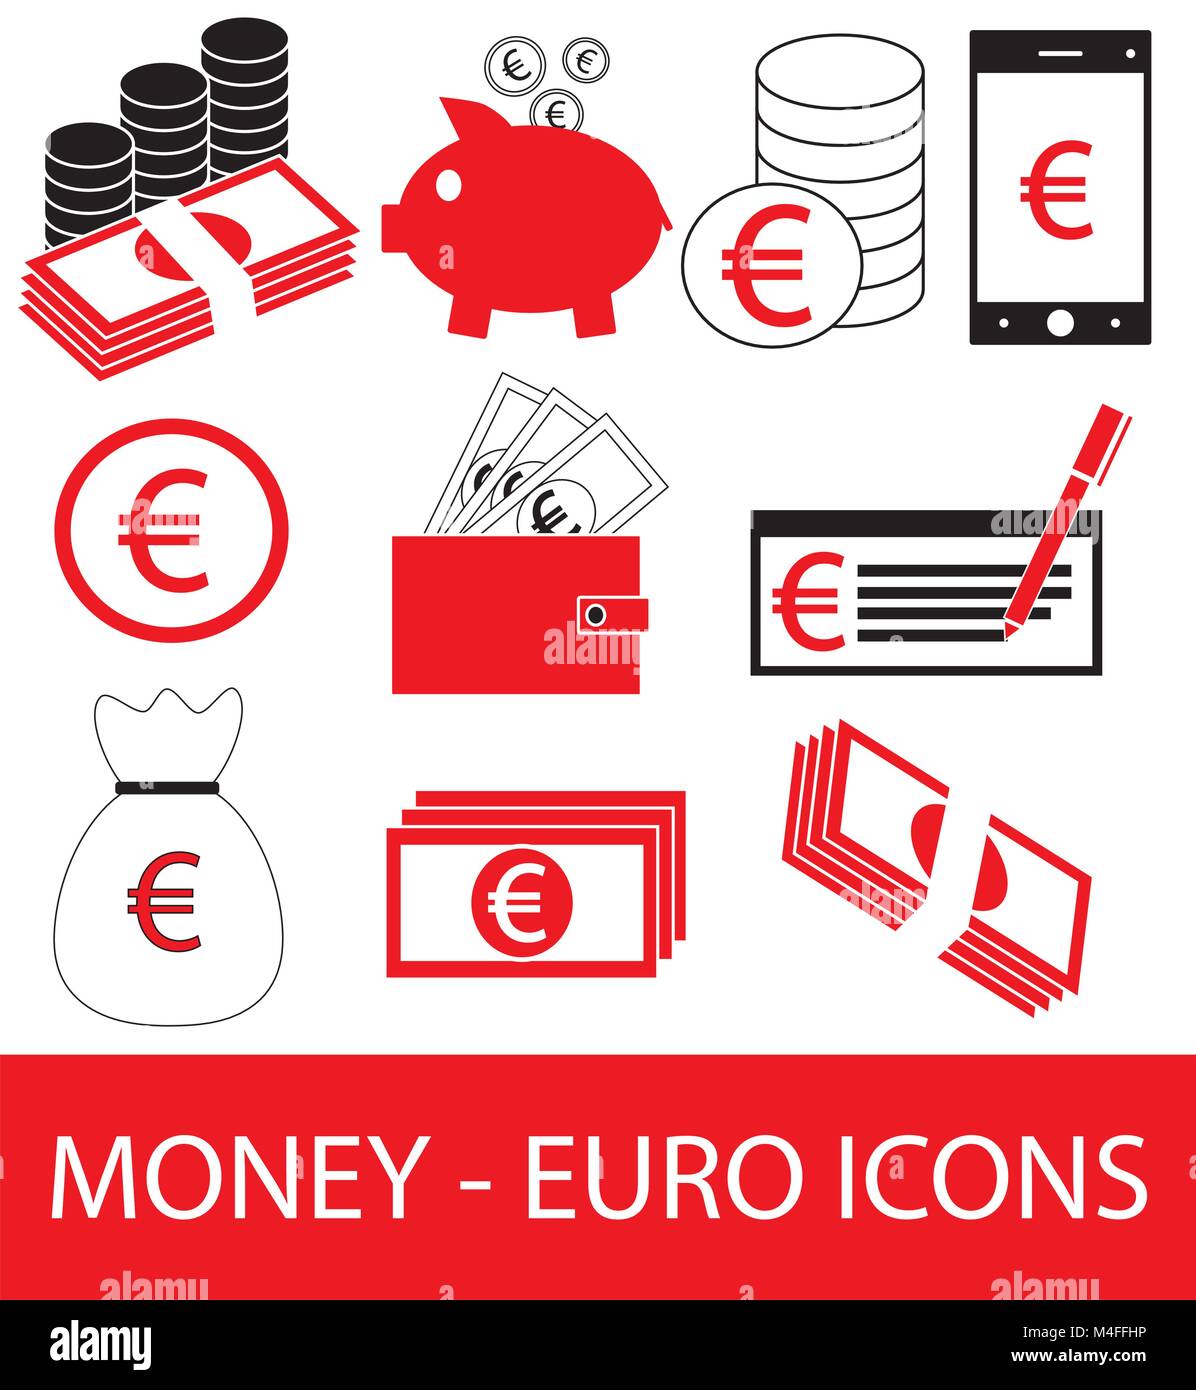 Satz, Sammlung oder Packung mit Euro Symbol oder Logo Vektor. Münzen, Noten oder Rechnungen, Handy oder Handy, Portemonnaie oder prüfen. Symbol für die Europäische Union Stock Vektor